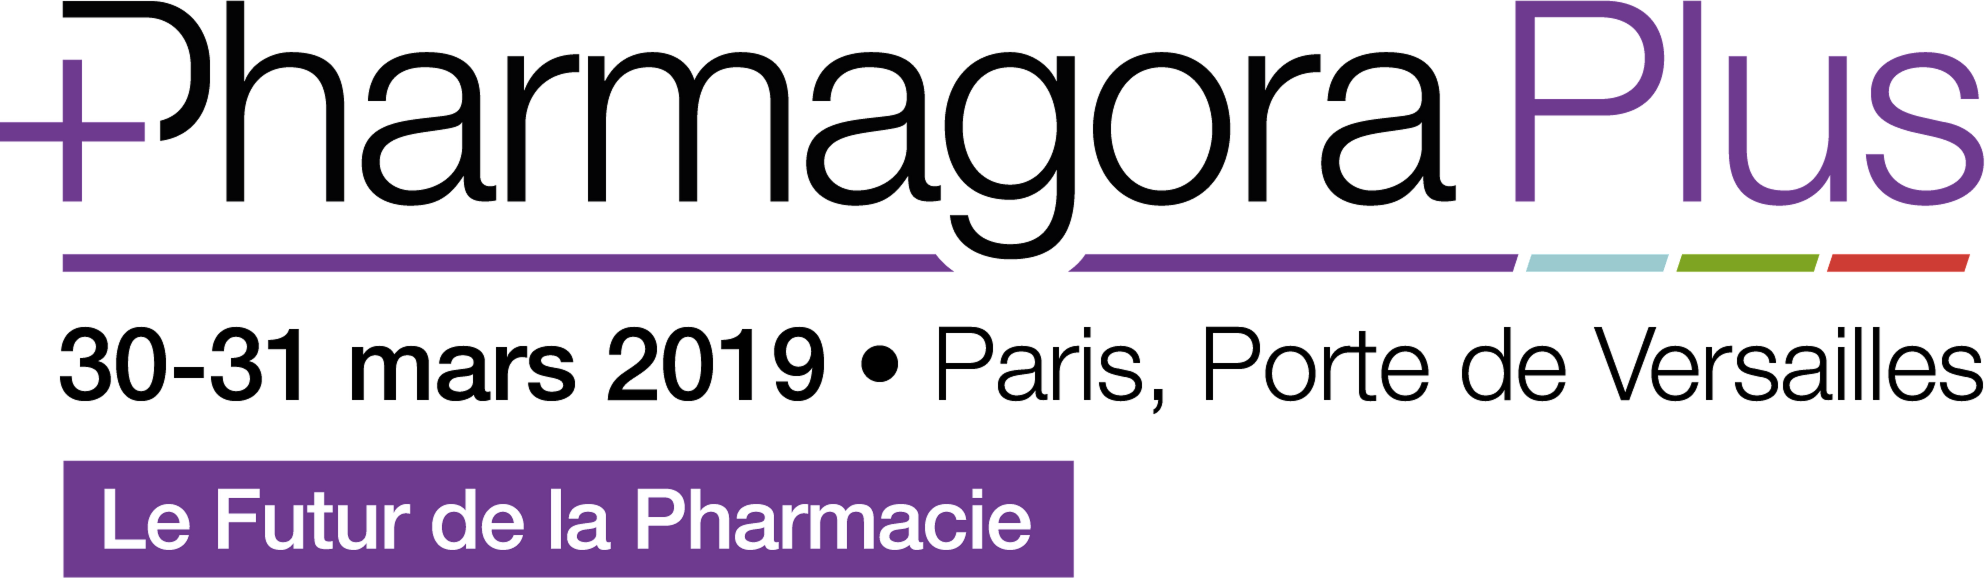 Pharmagora plus 2019